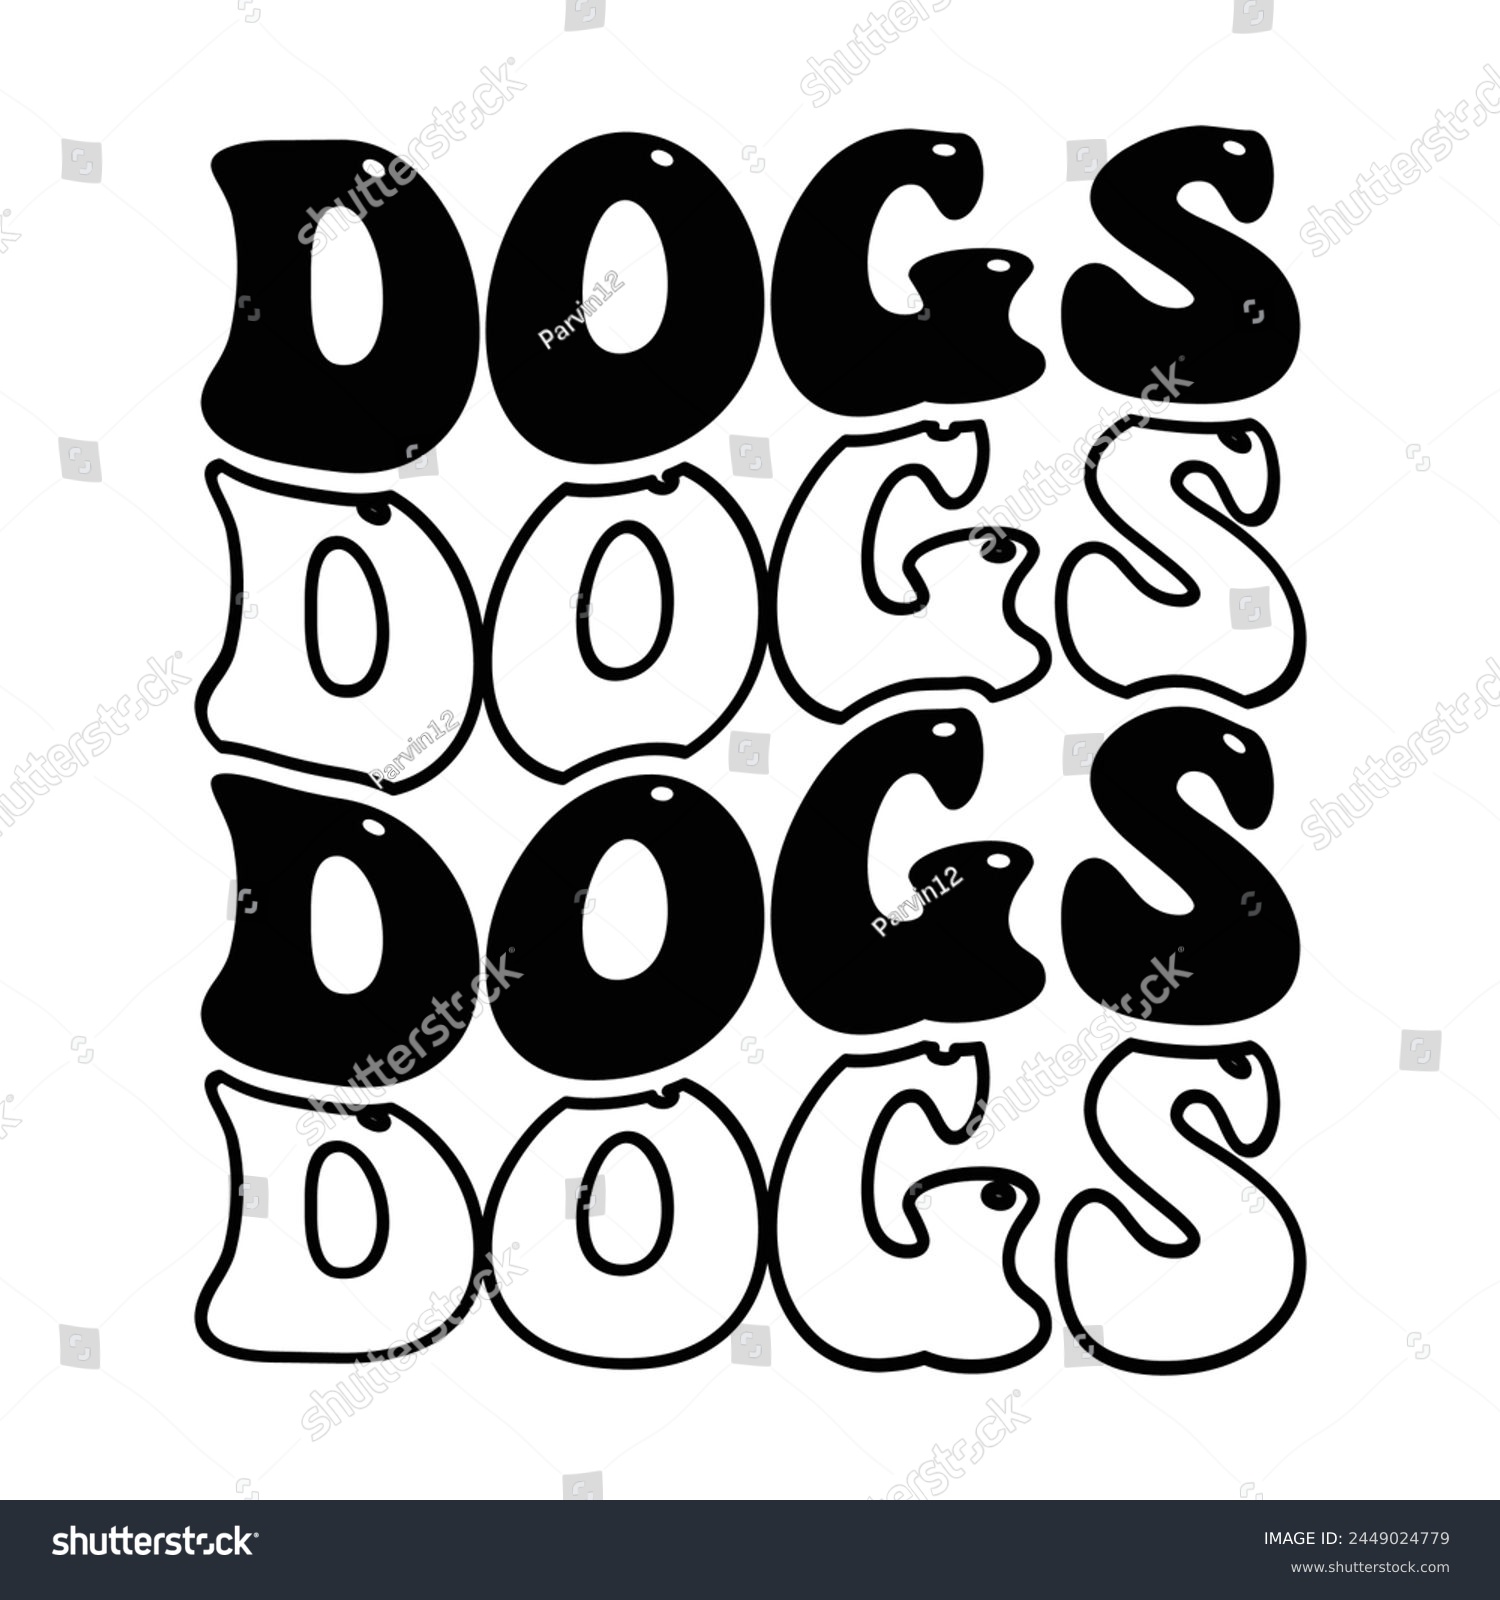 SVG of Dogs wave design for sale svg